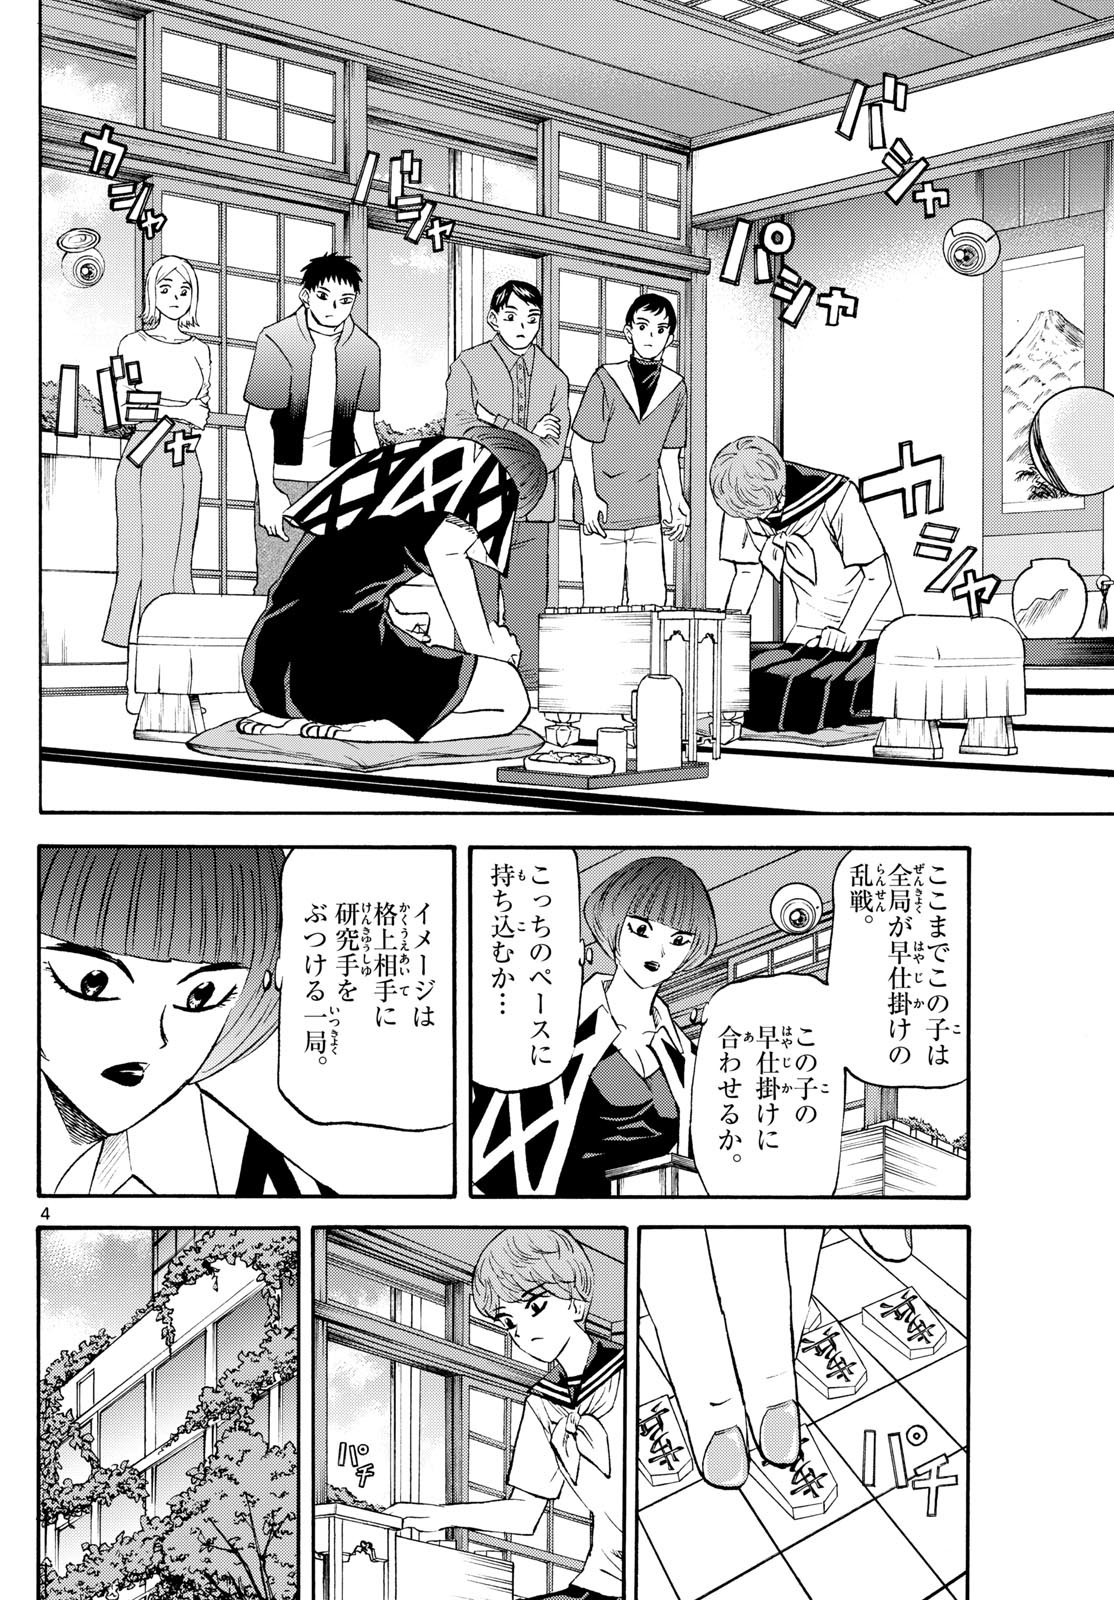 Ryu-to-Ichigo - Chapter 200 - Page 4